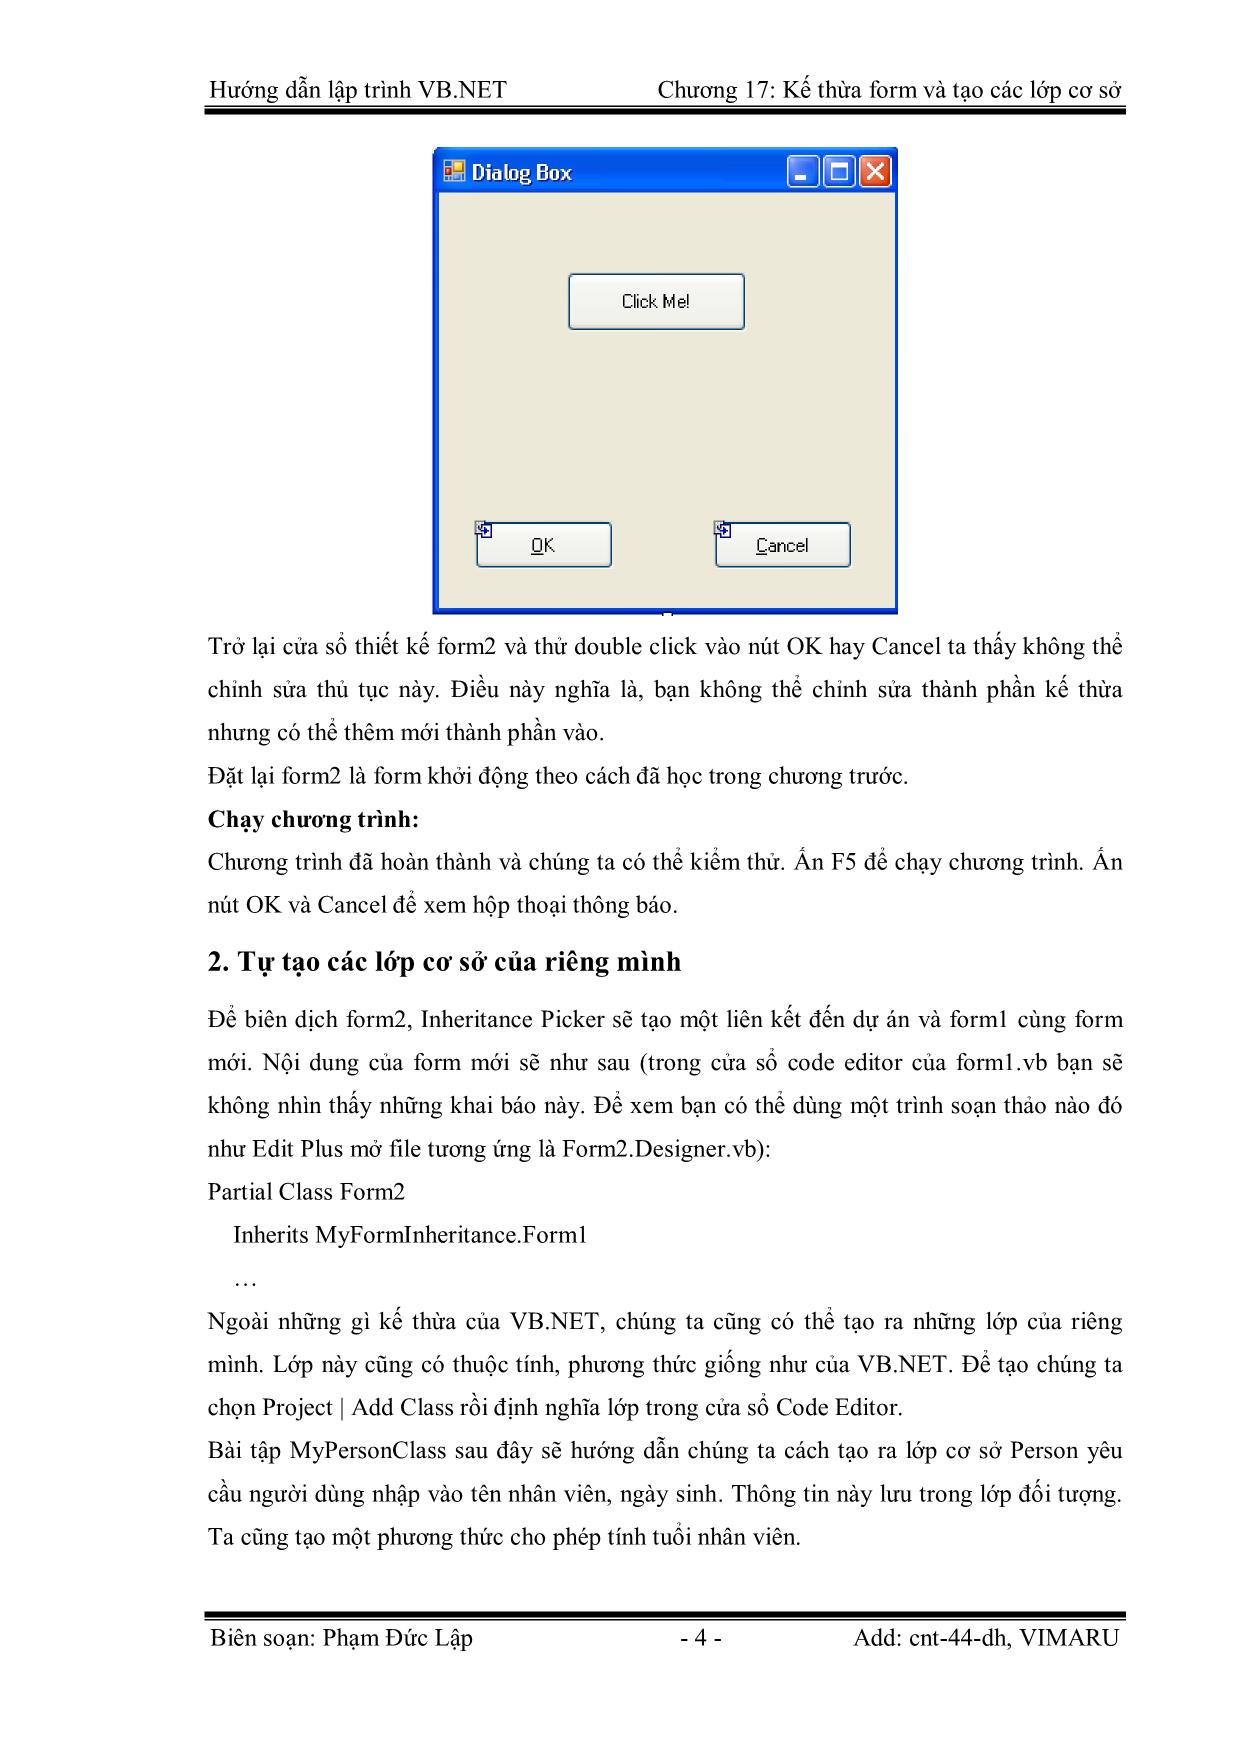 Giáo trình Hướng dẫn lập trình VB.NET - Chương 17: Kế thừa Form và tạo các lớp cơ sở - Phạm Đức Lập trang 4